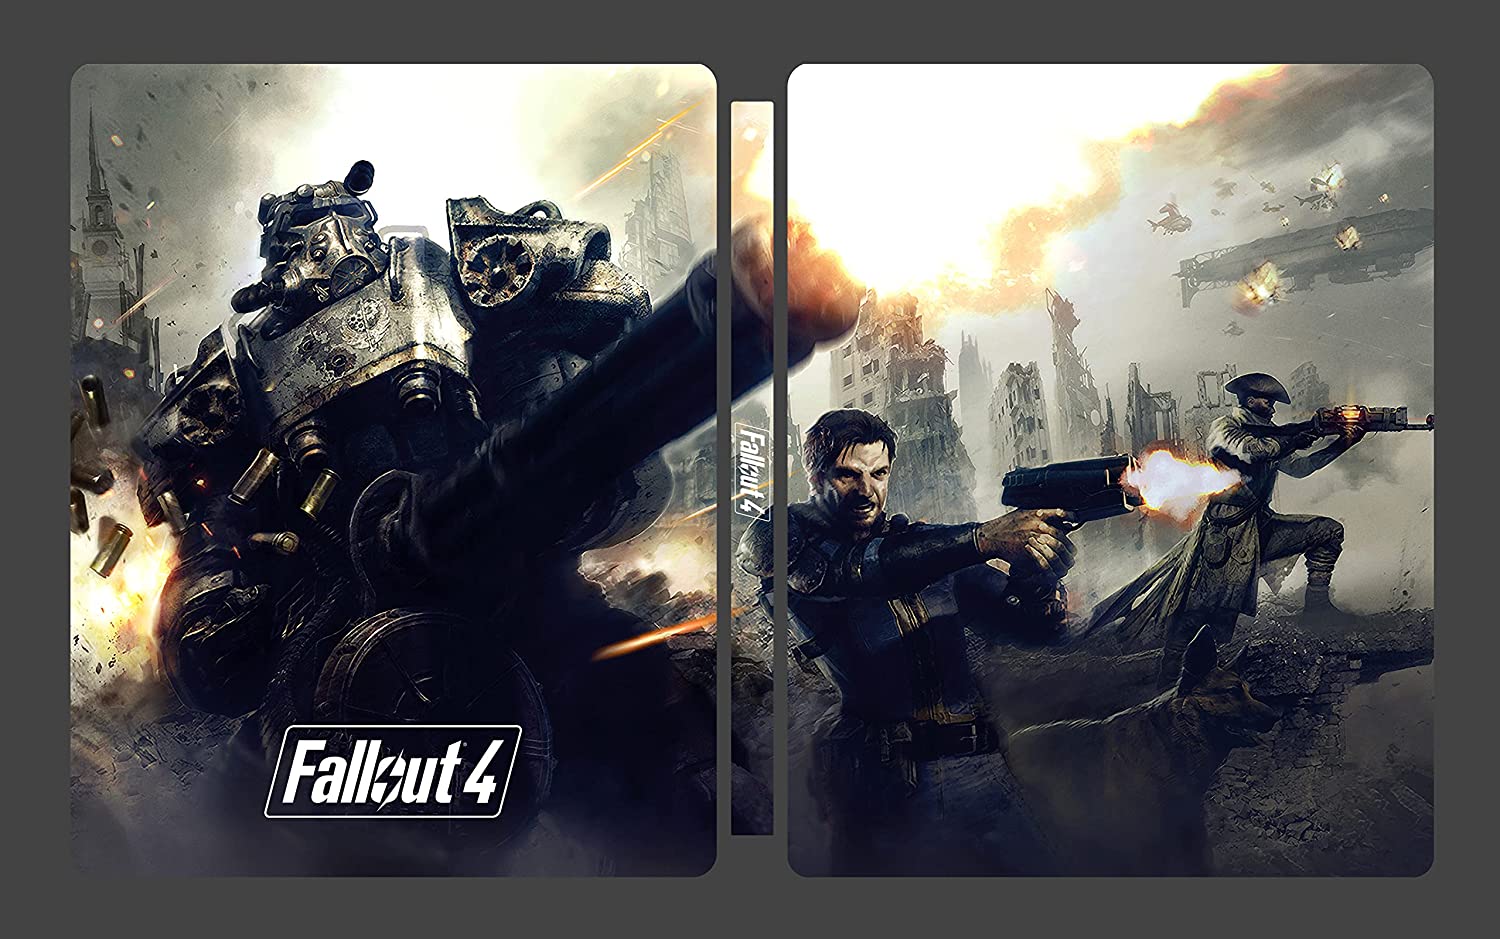 W październiku zadebiutuje specjalne wydanie Fallout 4 GOTY Steelbook  Edition - Kolekcjonerki